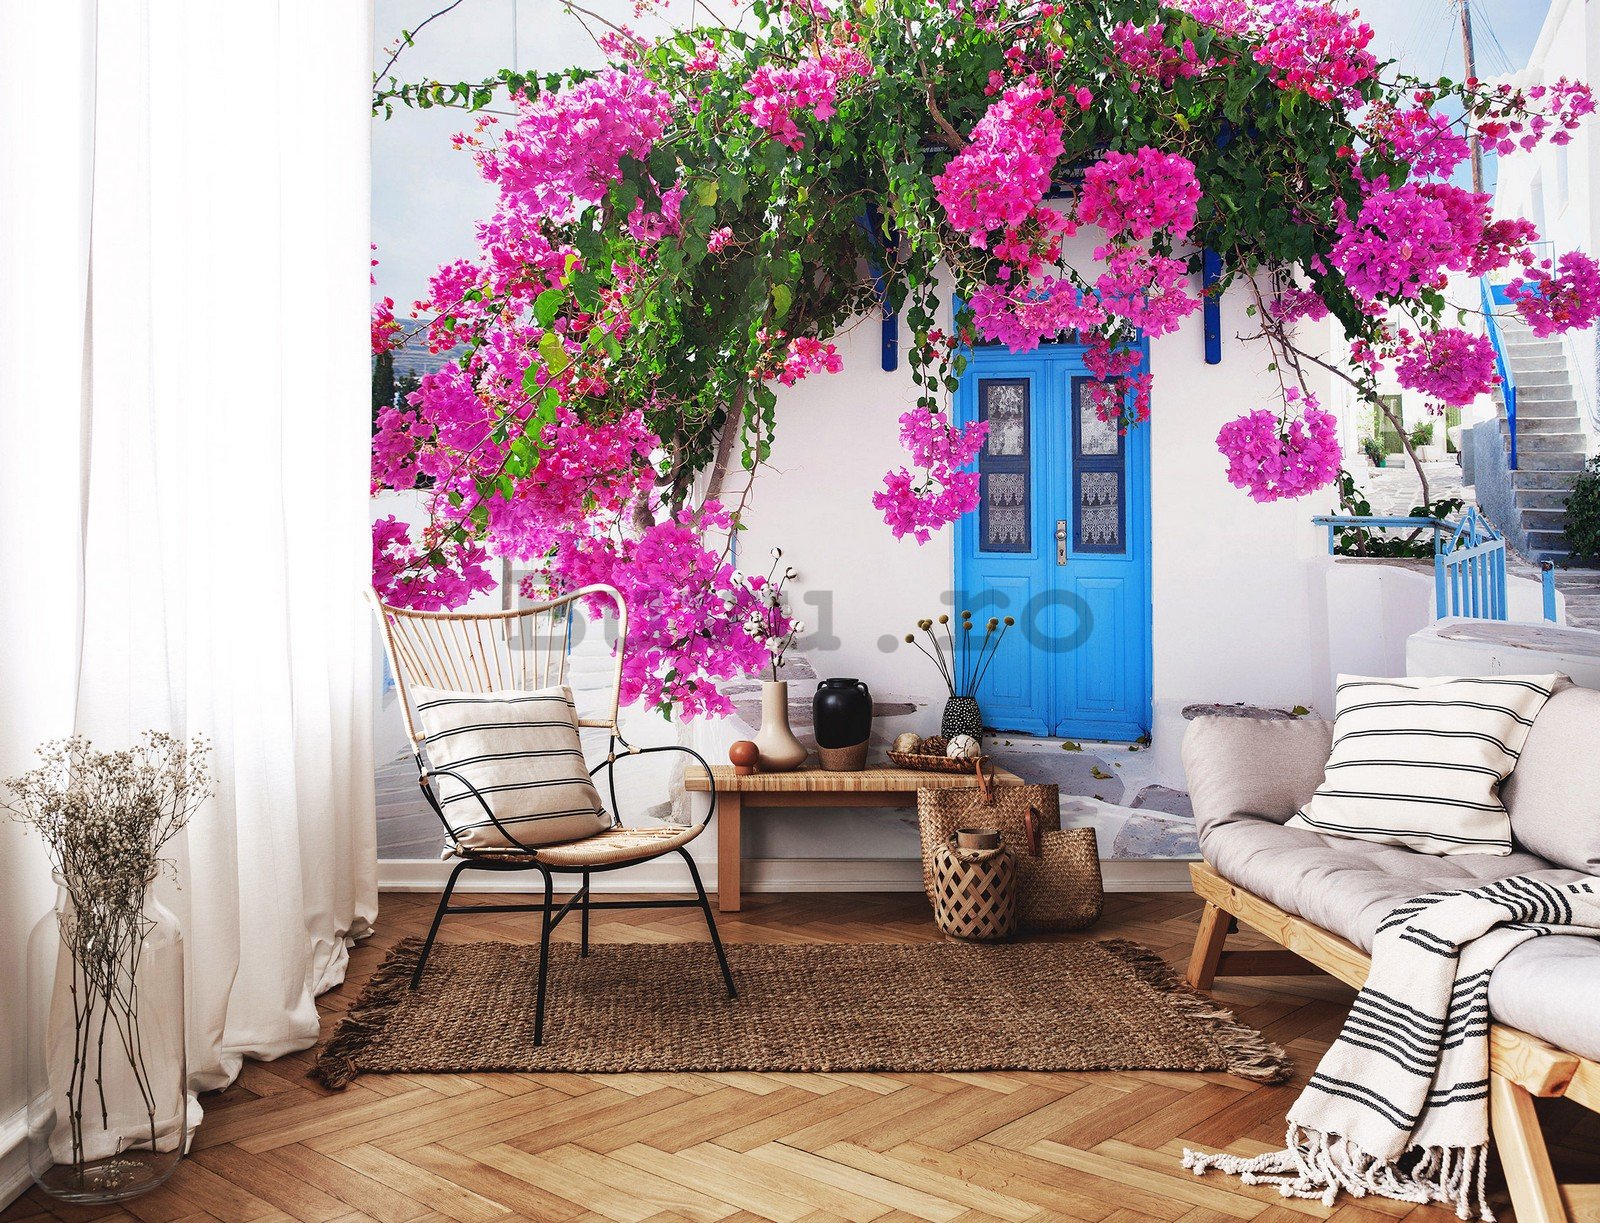 Fototapet vlies: Flori de stradă grecească (1) - 254x184 cm